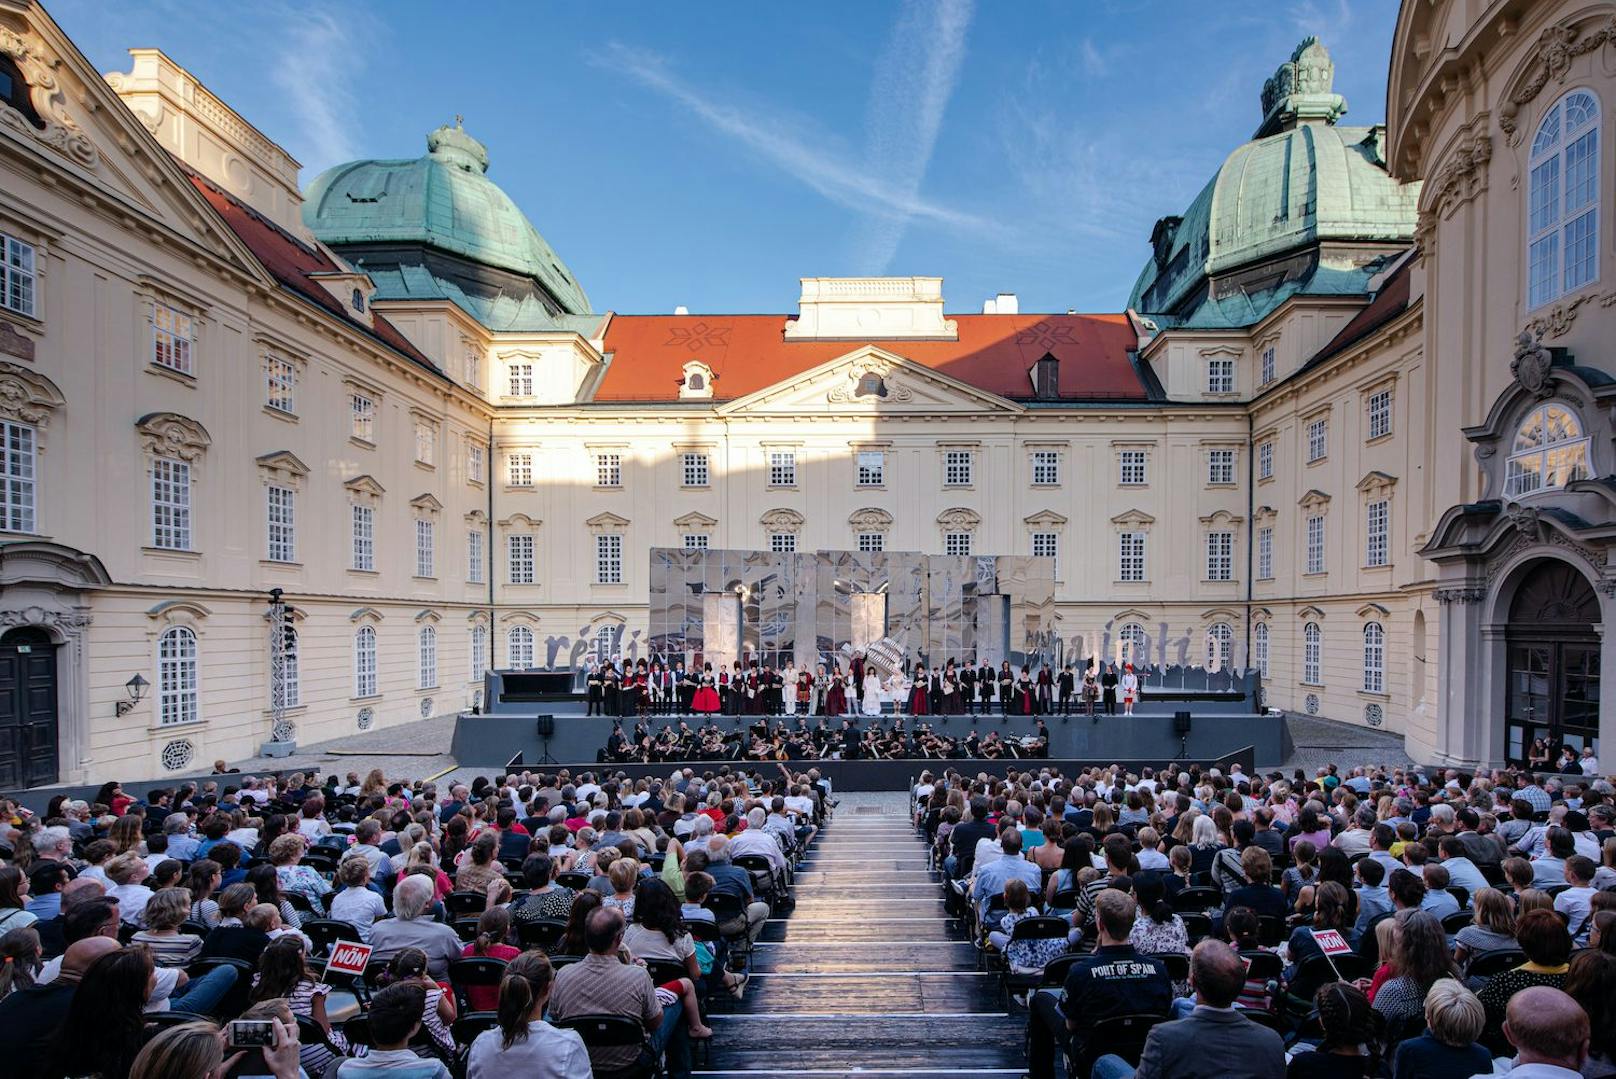 Heuer wird im Rahmen der Oper Klosterneuburg "Don Carlo" aufgeführt.